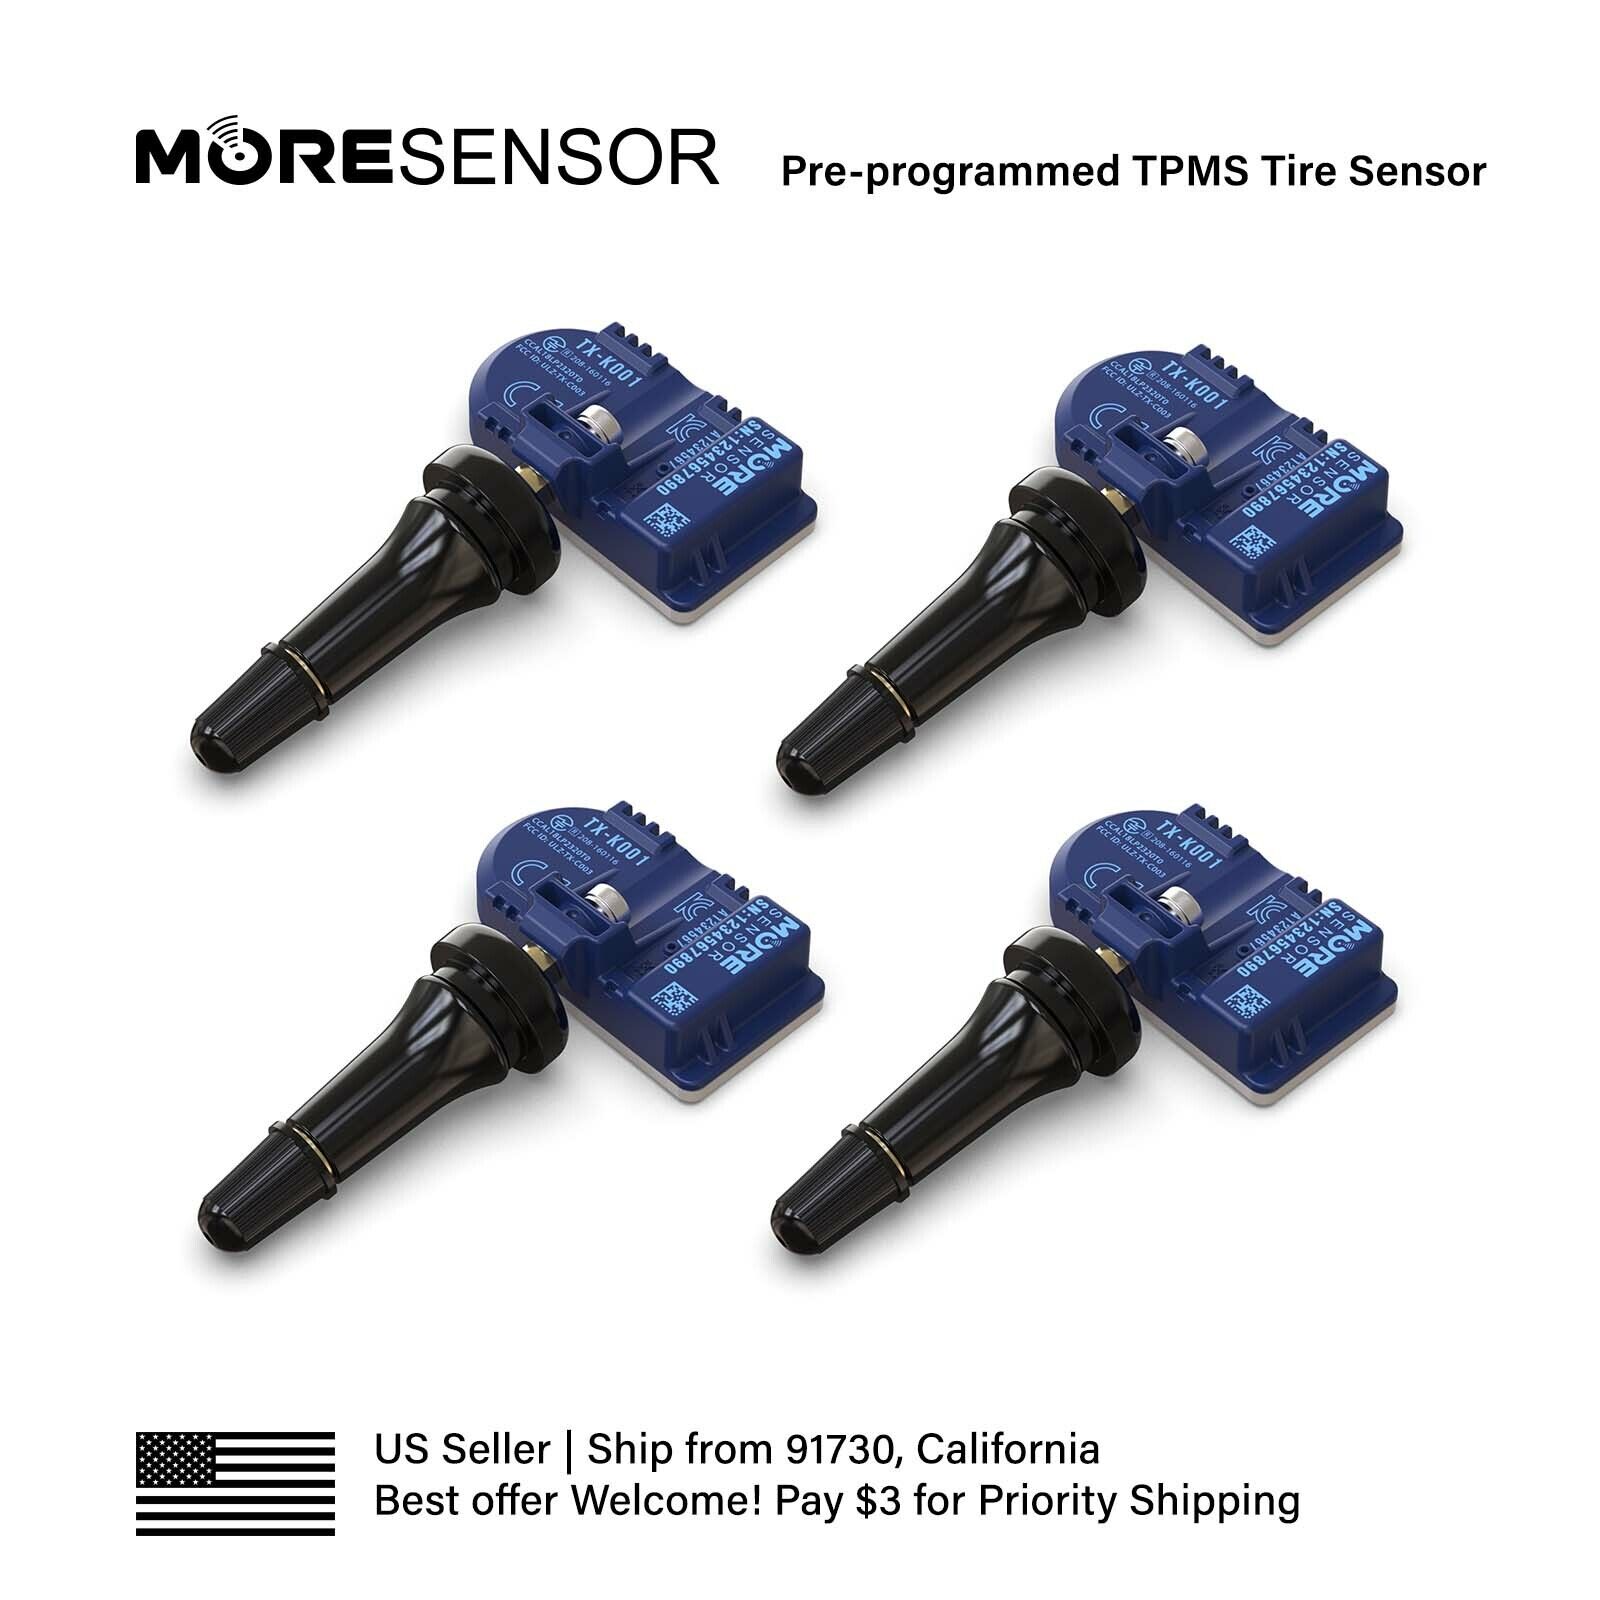 4PC 315MHz MORESENSOR TPMS Snap-in Tire Sensor for Silverado Colorado Canyon H3